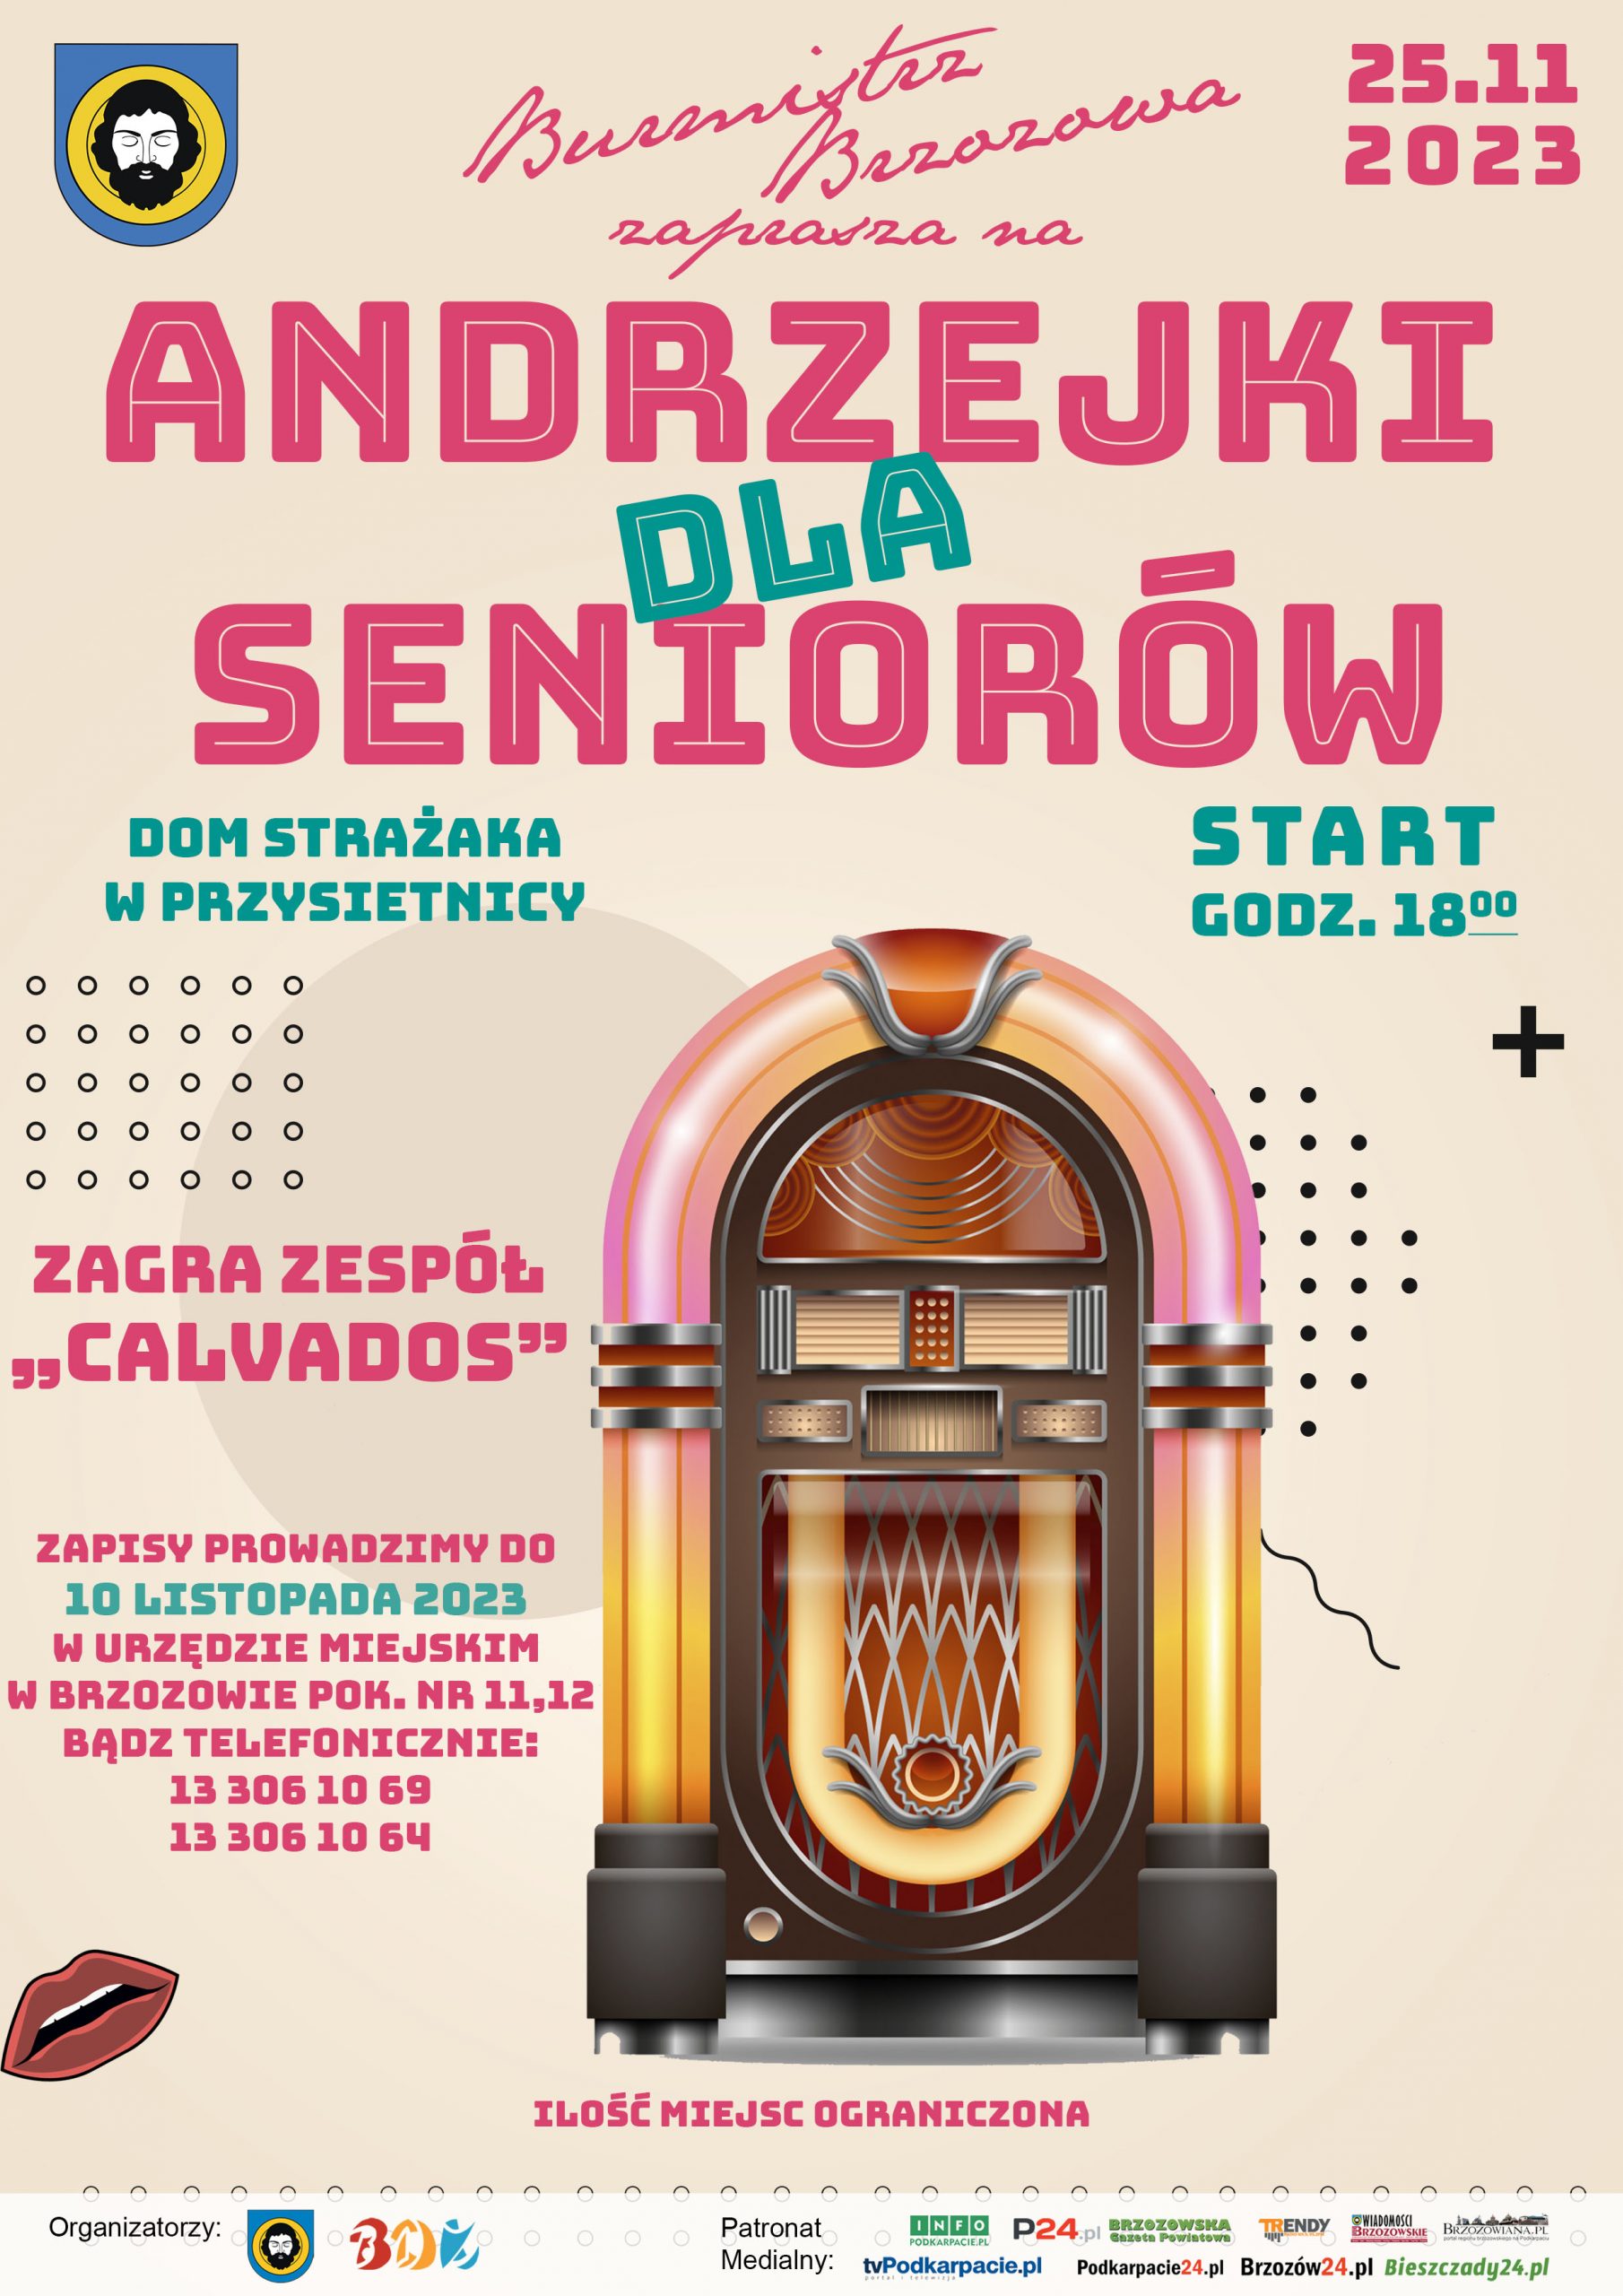 Andrzejki-dla-seniorów-scaled